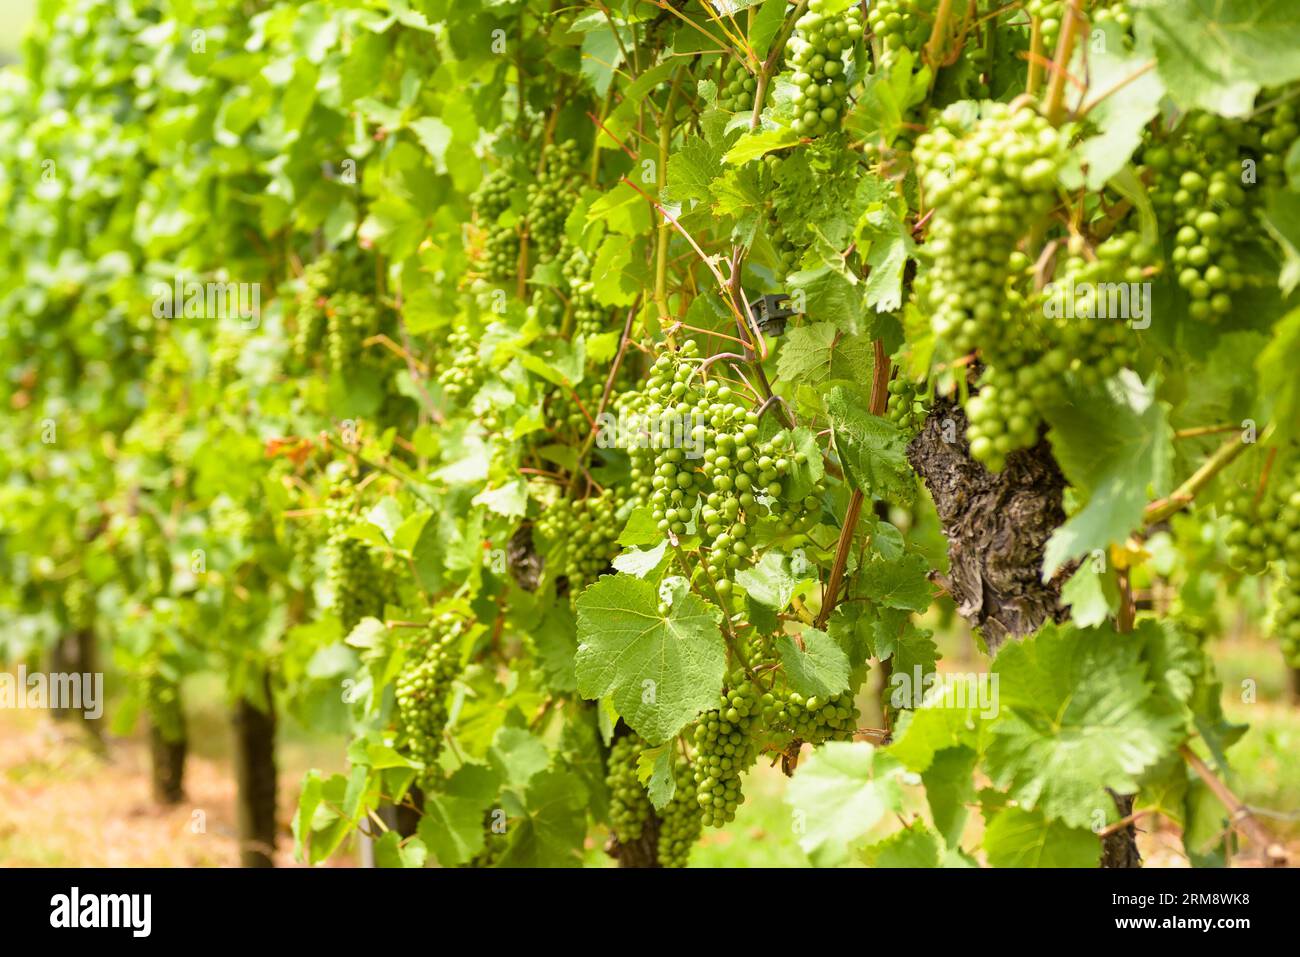 Primo piano del vigneto, coltivazione di uva in azienda vinicola in estate. Piante di vite in piantagione di vite verde. Concetto di viticoltura, cantina, vinificazione, organo Foto Stock